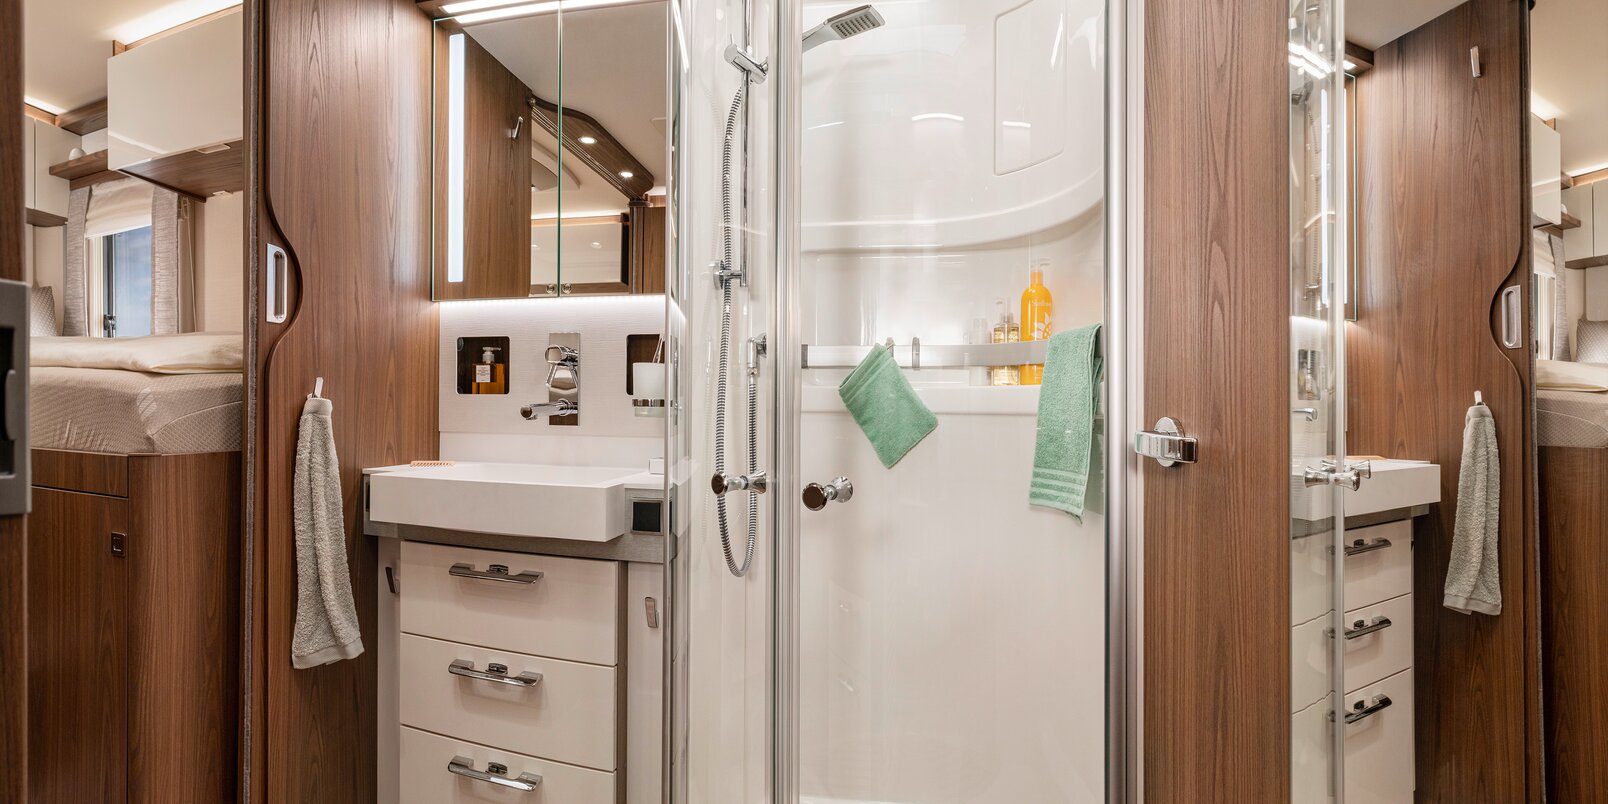 HYMER B-ML I 880:n ylellinen kylpyhuone: peilikaappi, säilytystilaa pesualtaan alla, erillinen suihku lasiovilla sekä kylpyhuonetarvikkeita